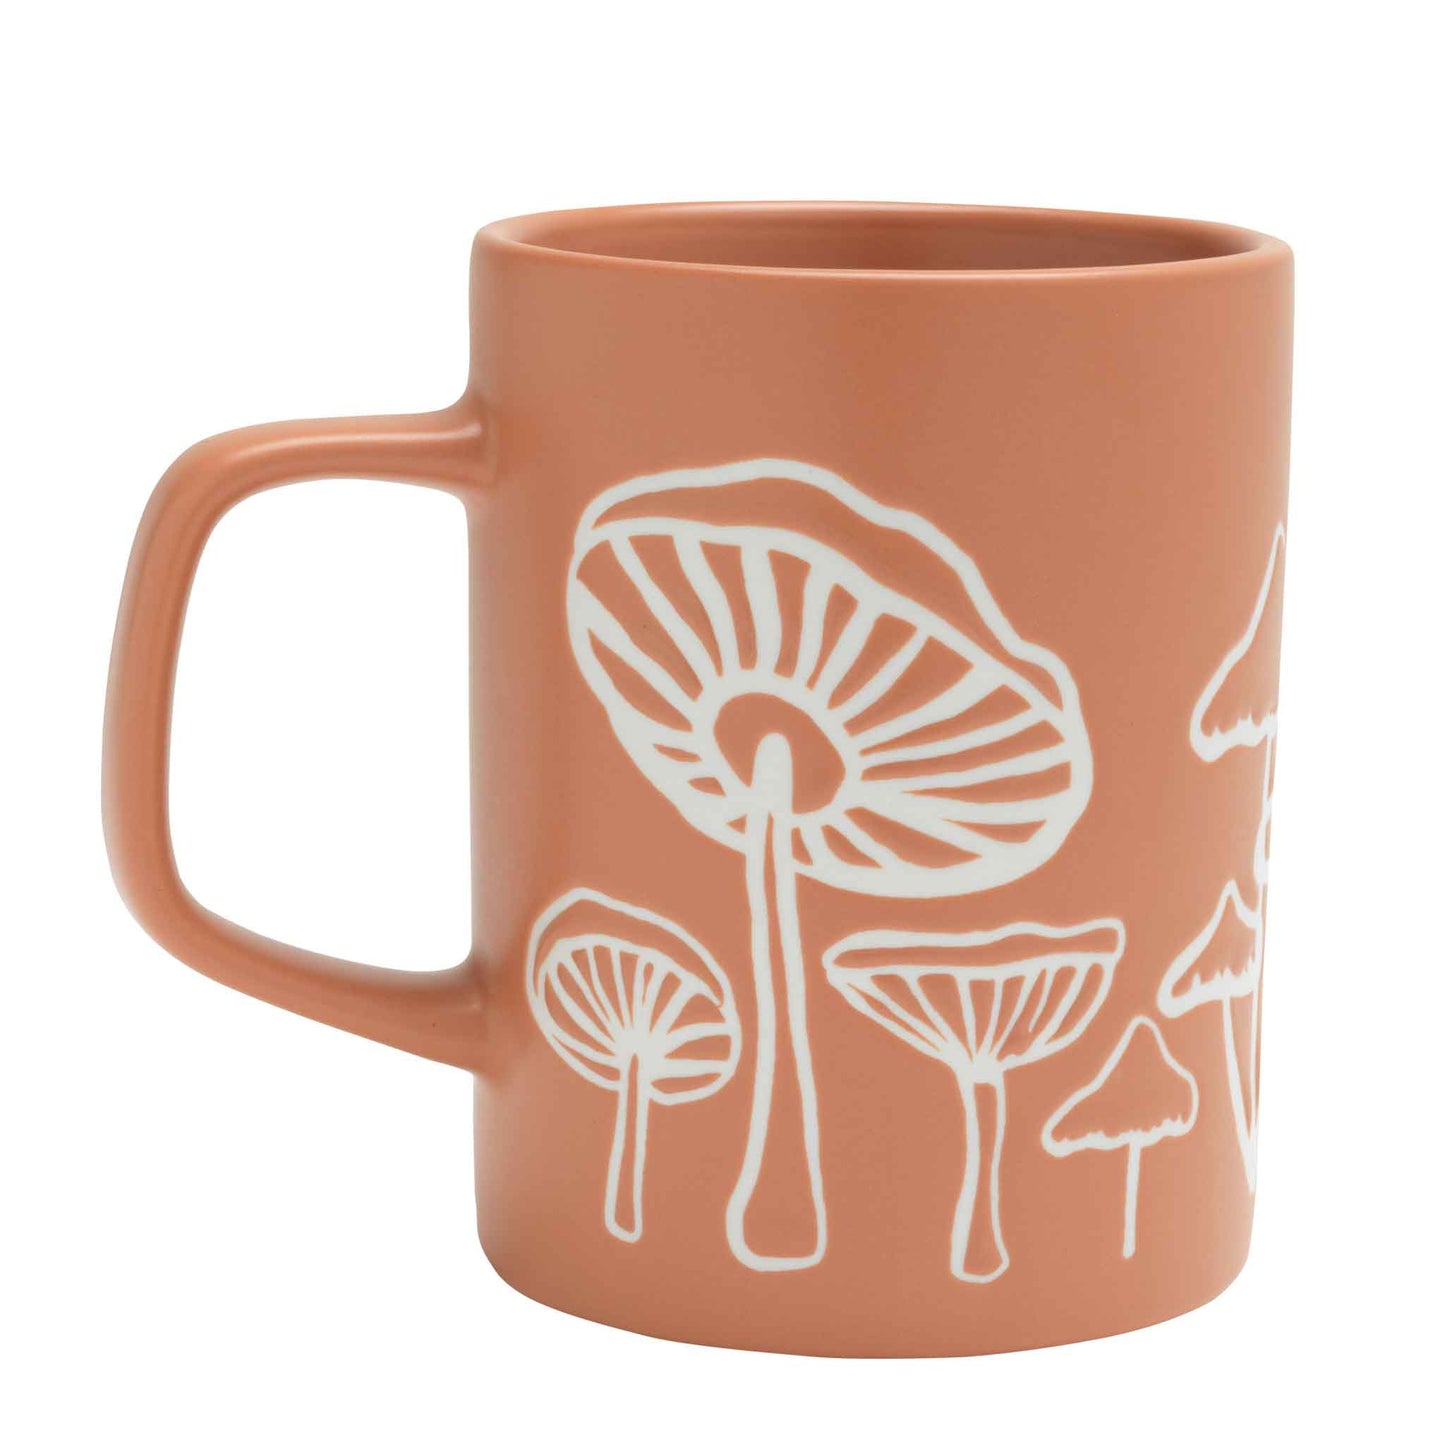 Mushroom Mug